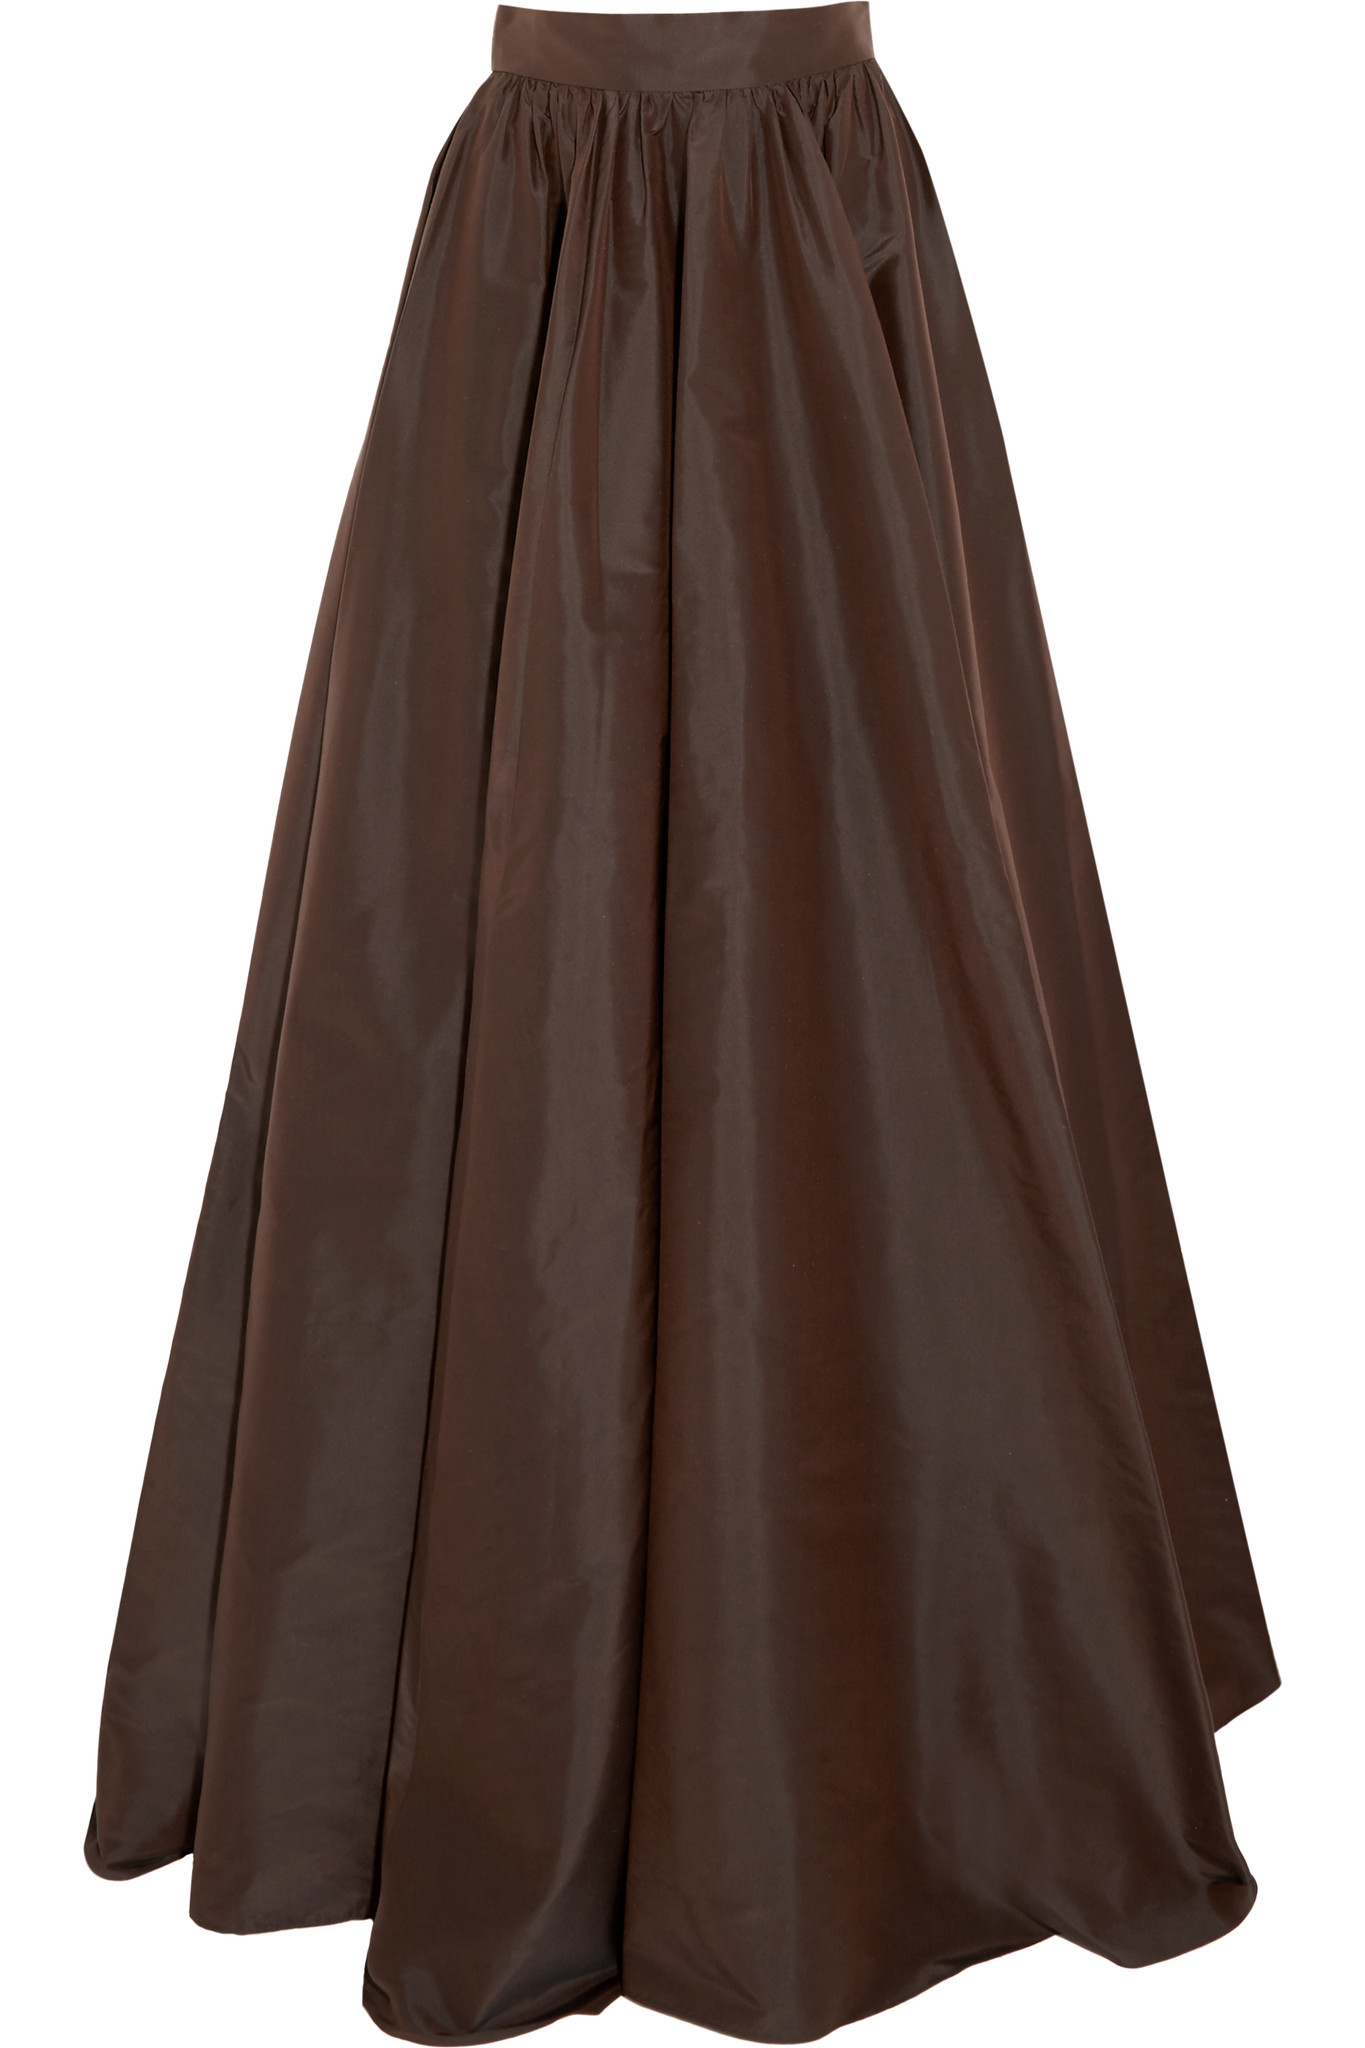 Brown Taffeta Skirt 77